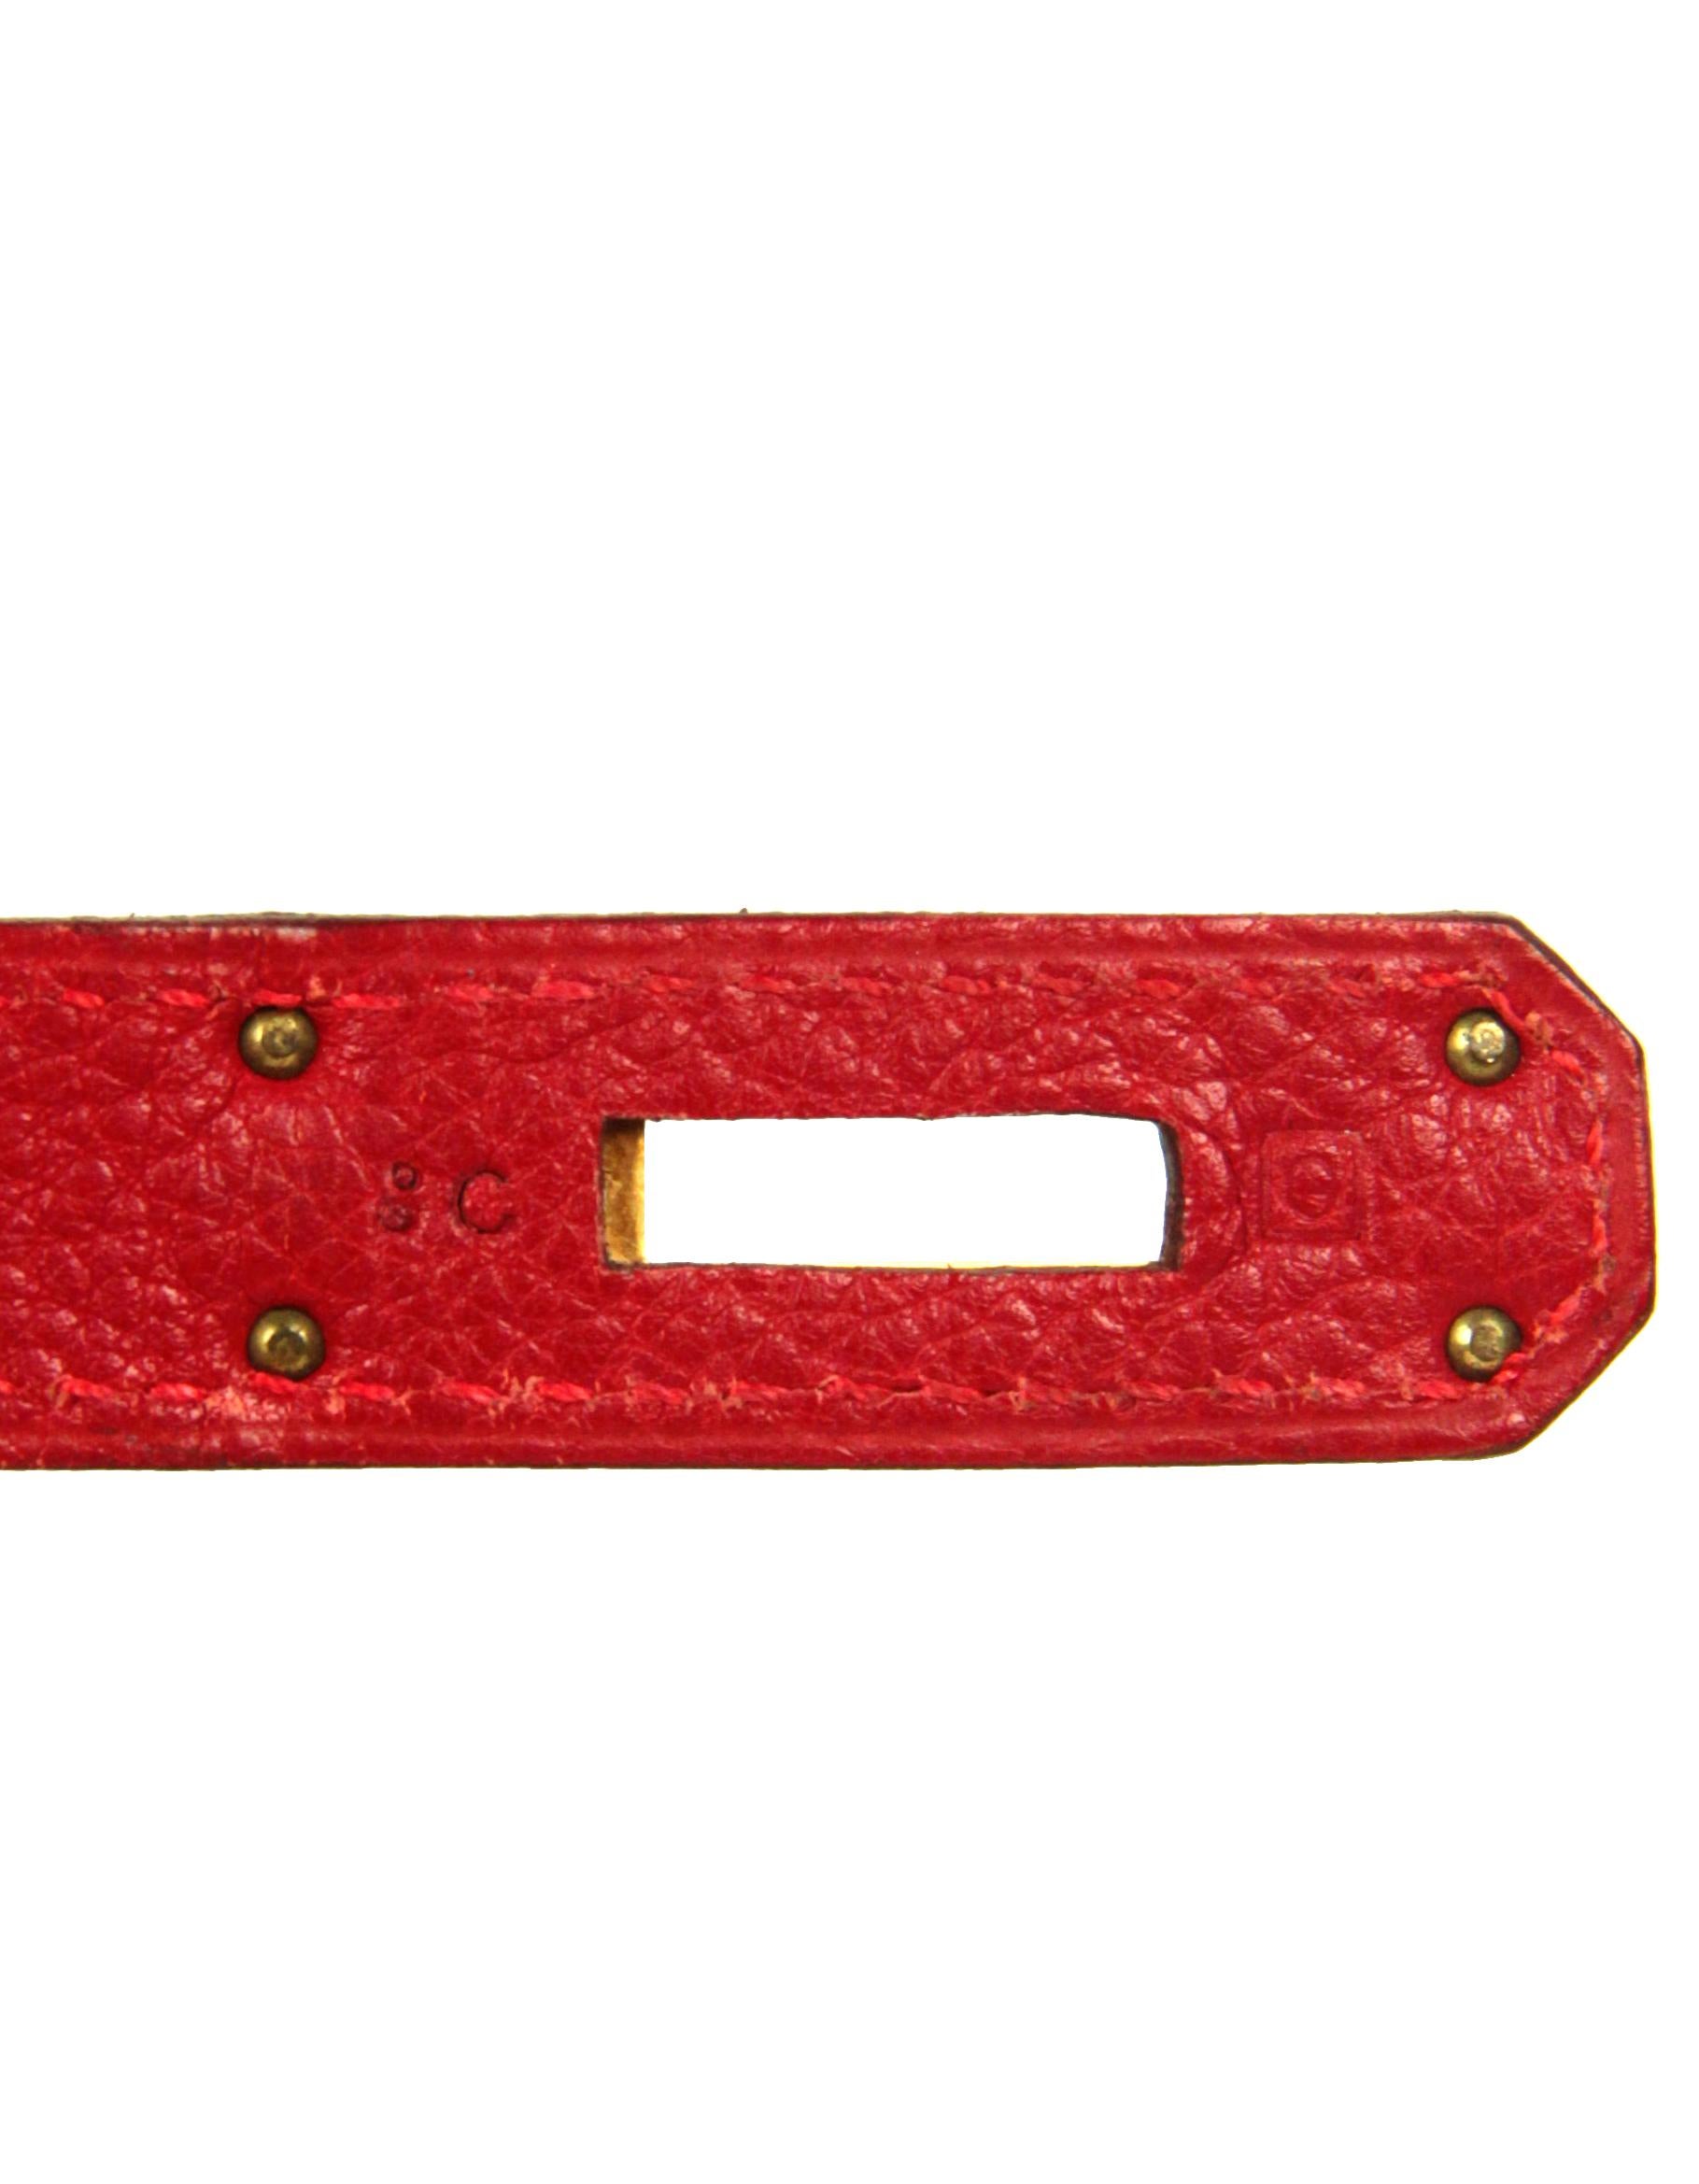 Hermes Rouge Vif Red Togo Leather 30cm Birkin Bag GHW 4